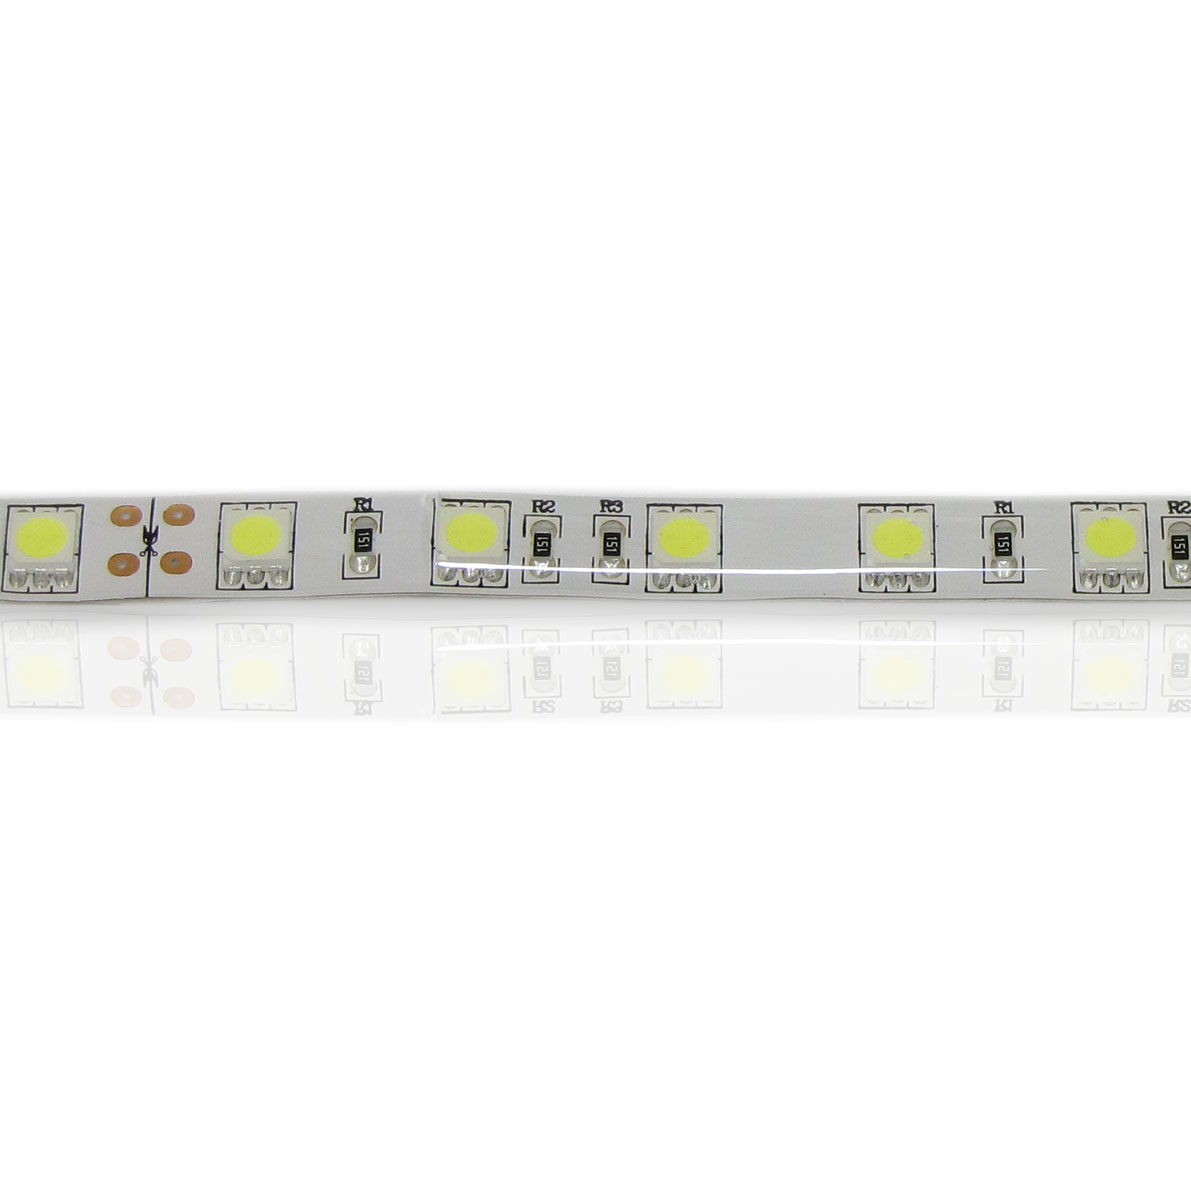 светодиодная лента standart pro class, 5050, 60led/m, white, 24v, ip65, артикул 51675